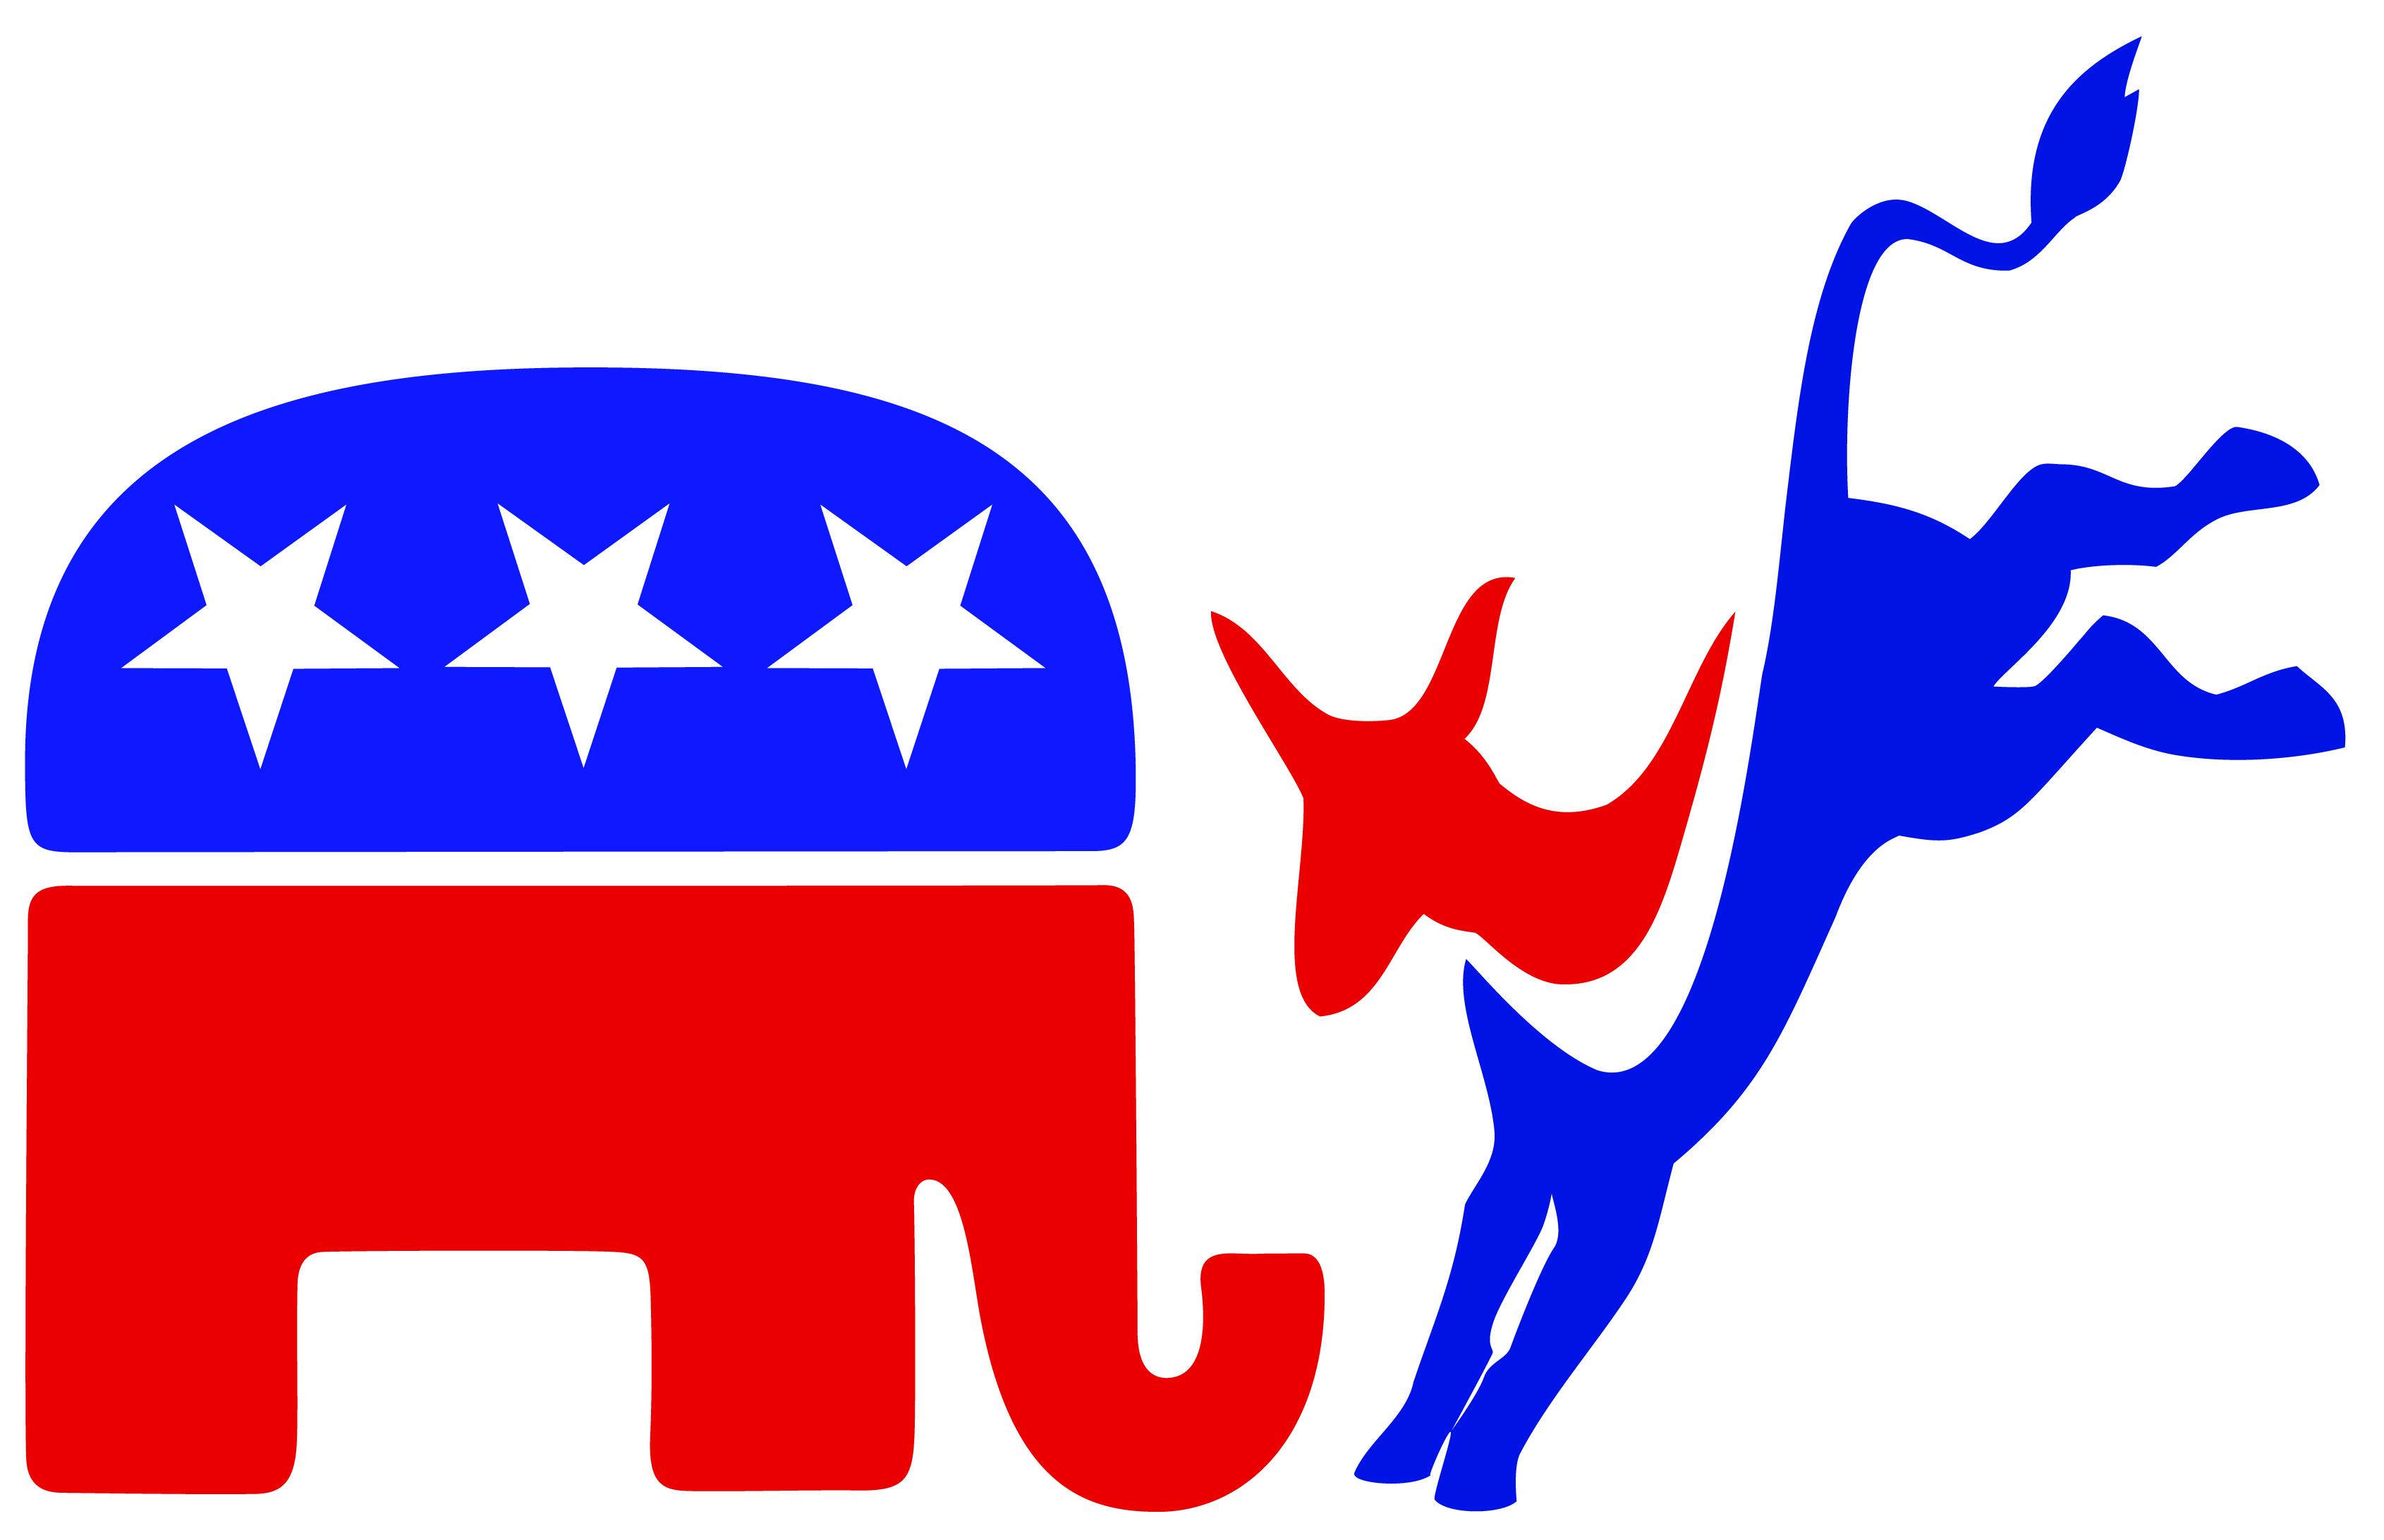 Republican Images Elephant - ClipArt Best